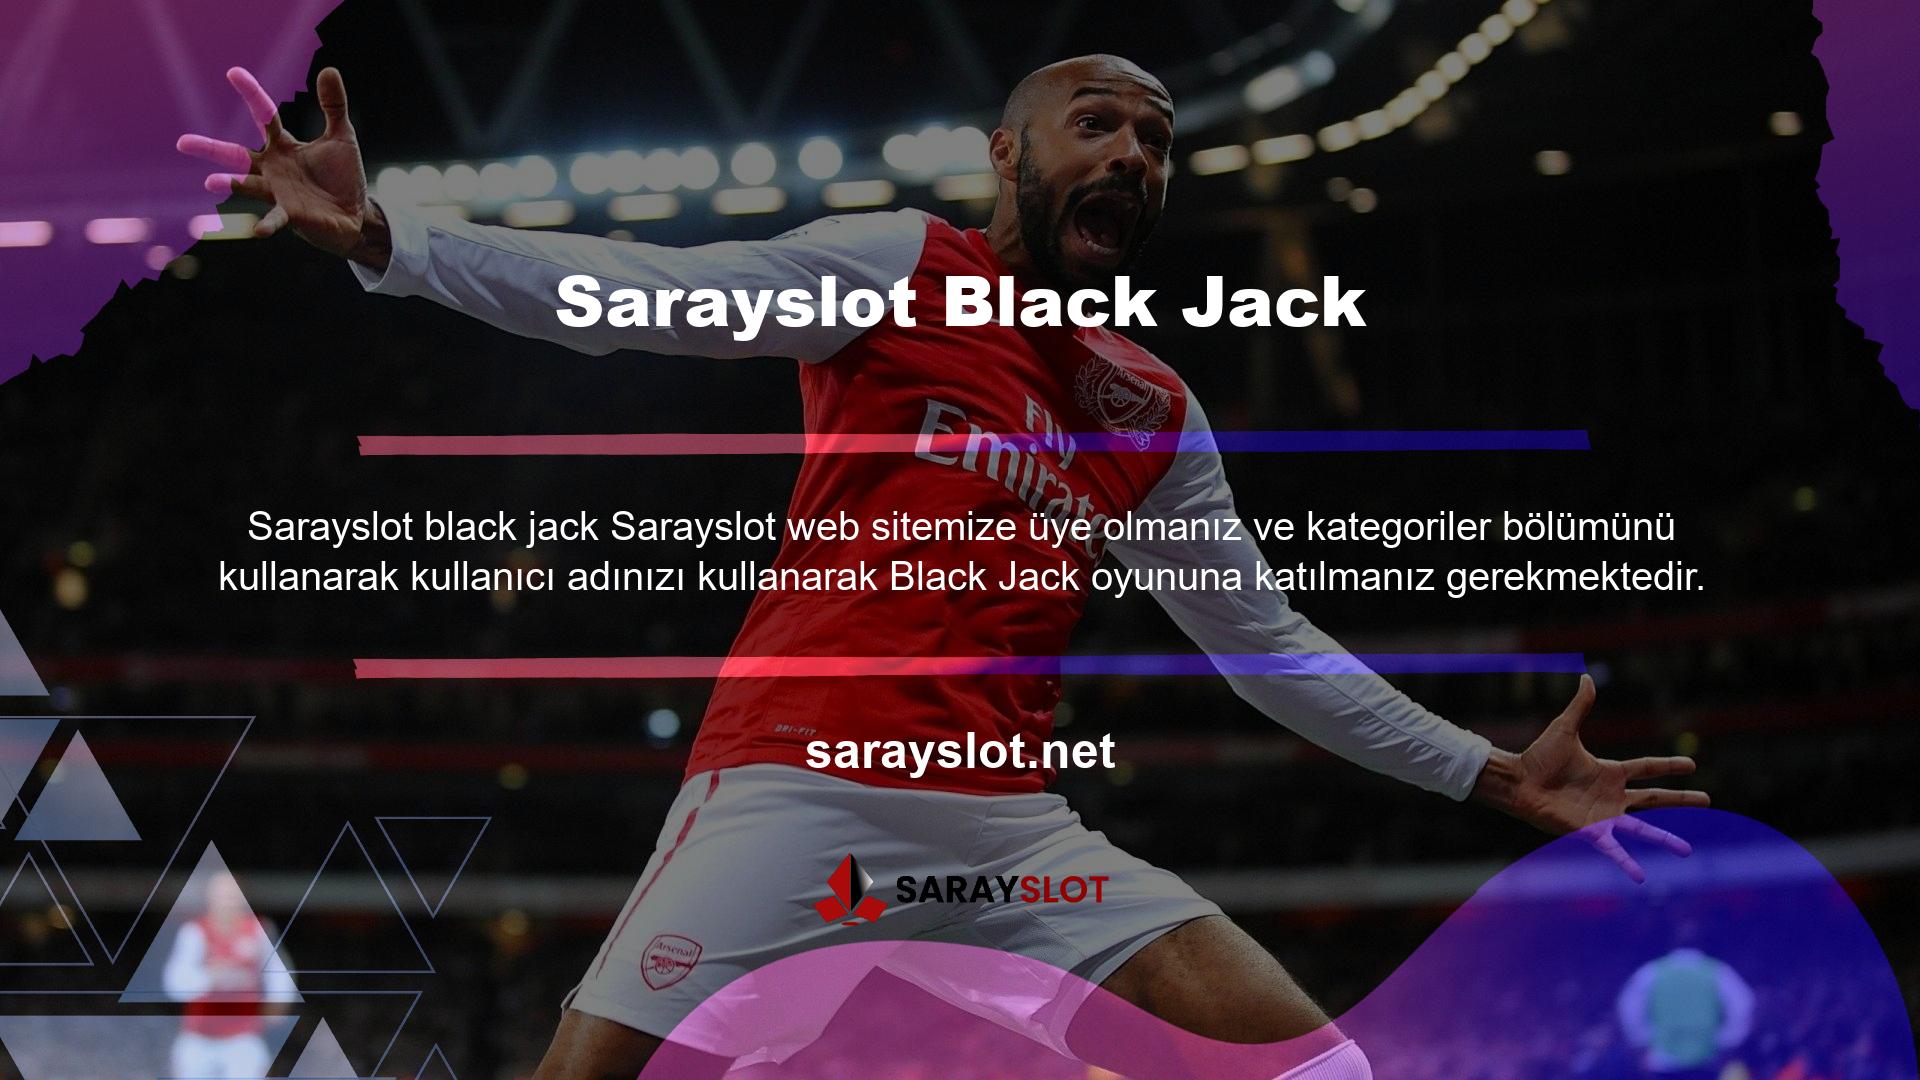 Sarayslot online casino oyunlarından biri olarak bilinen Black Jack oyununa yatırım yaparak gerçek para kazanabilirsiniz